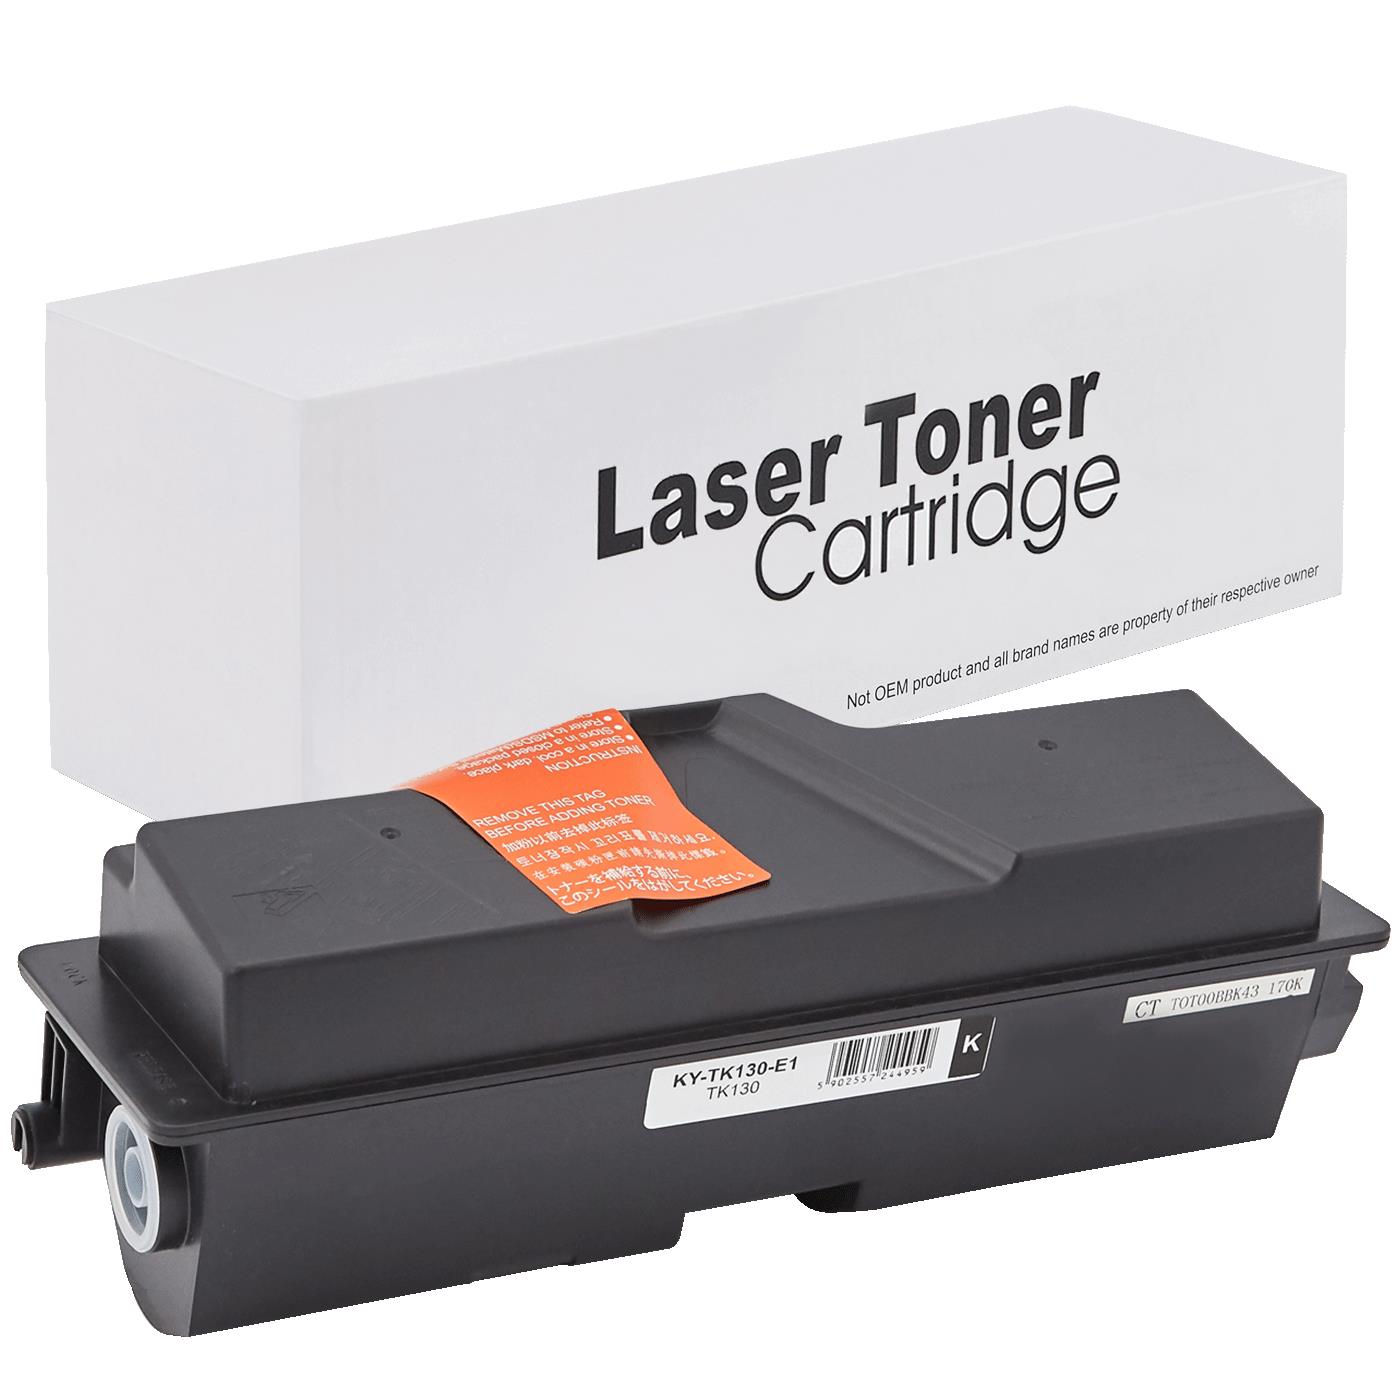 съвместима тонер касета за принтери и печатащи устройства на Kyocera Mita FS 1350 Toner KY-TK130 | TK130. Ниски цени, прецизно изпълнение, високо качество.